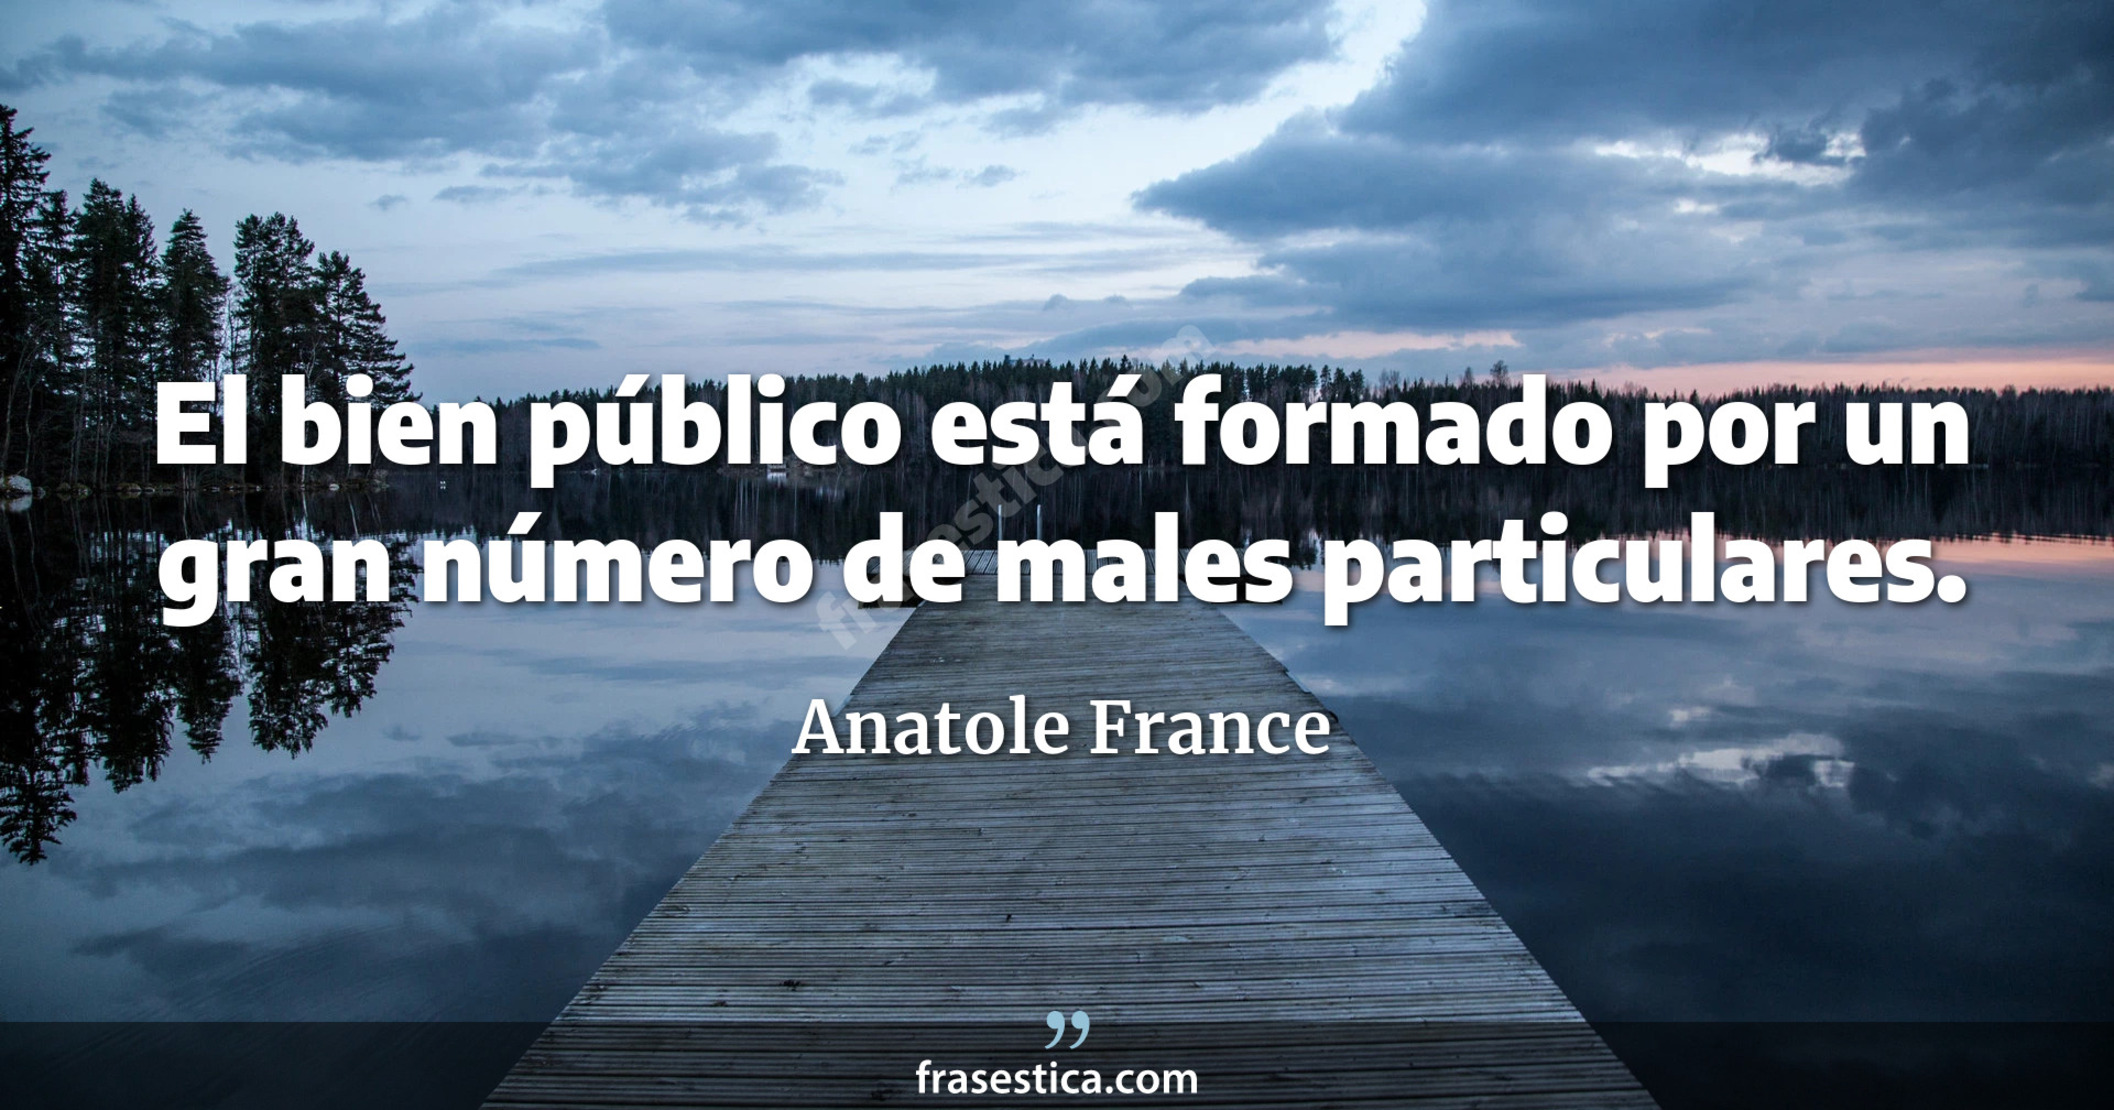 El bien público está formado por un gran número de males particulares. - Anatole France